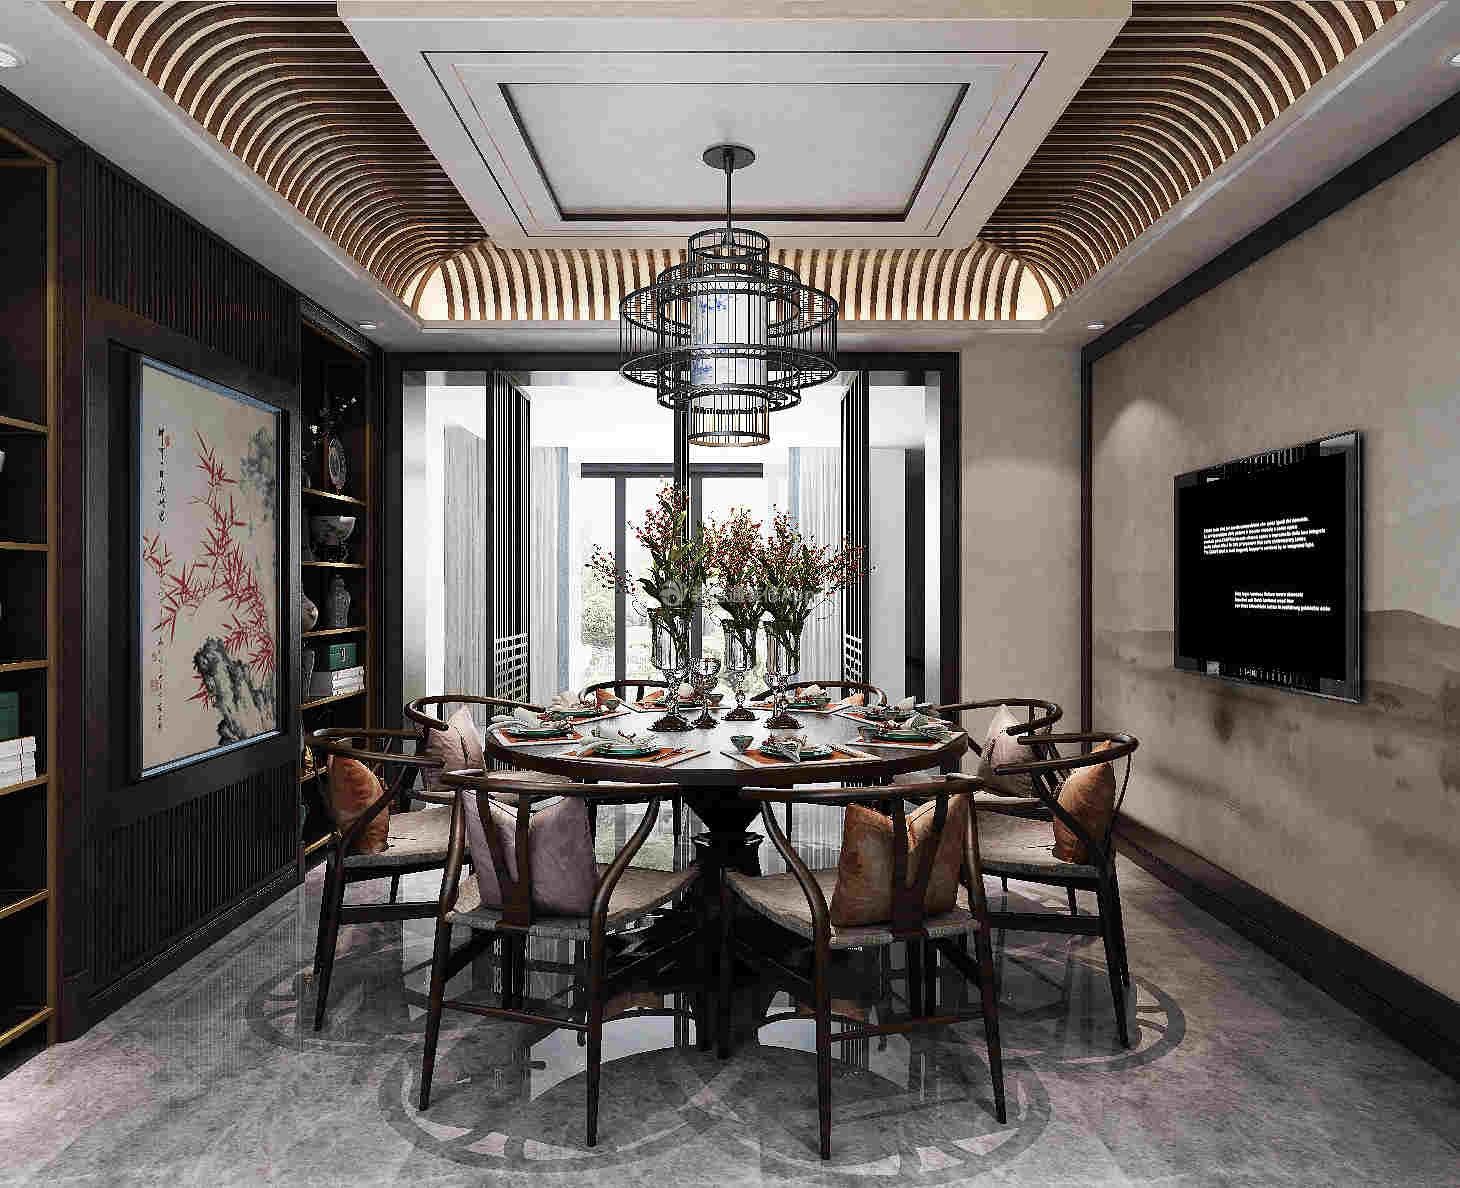 532平米中式别墅餐厅装修设计效果图欣赏